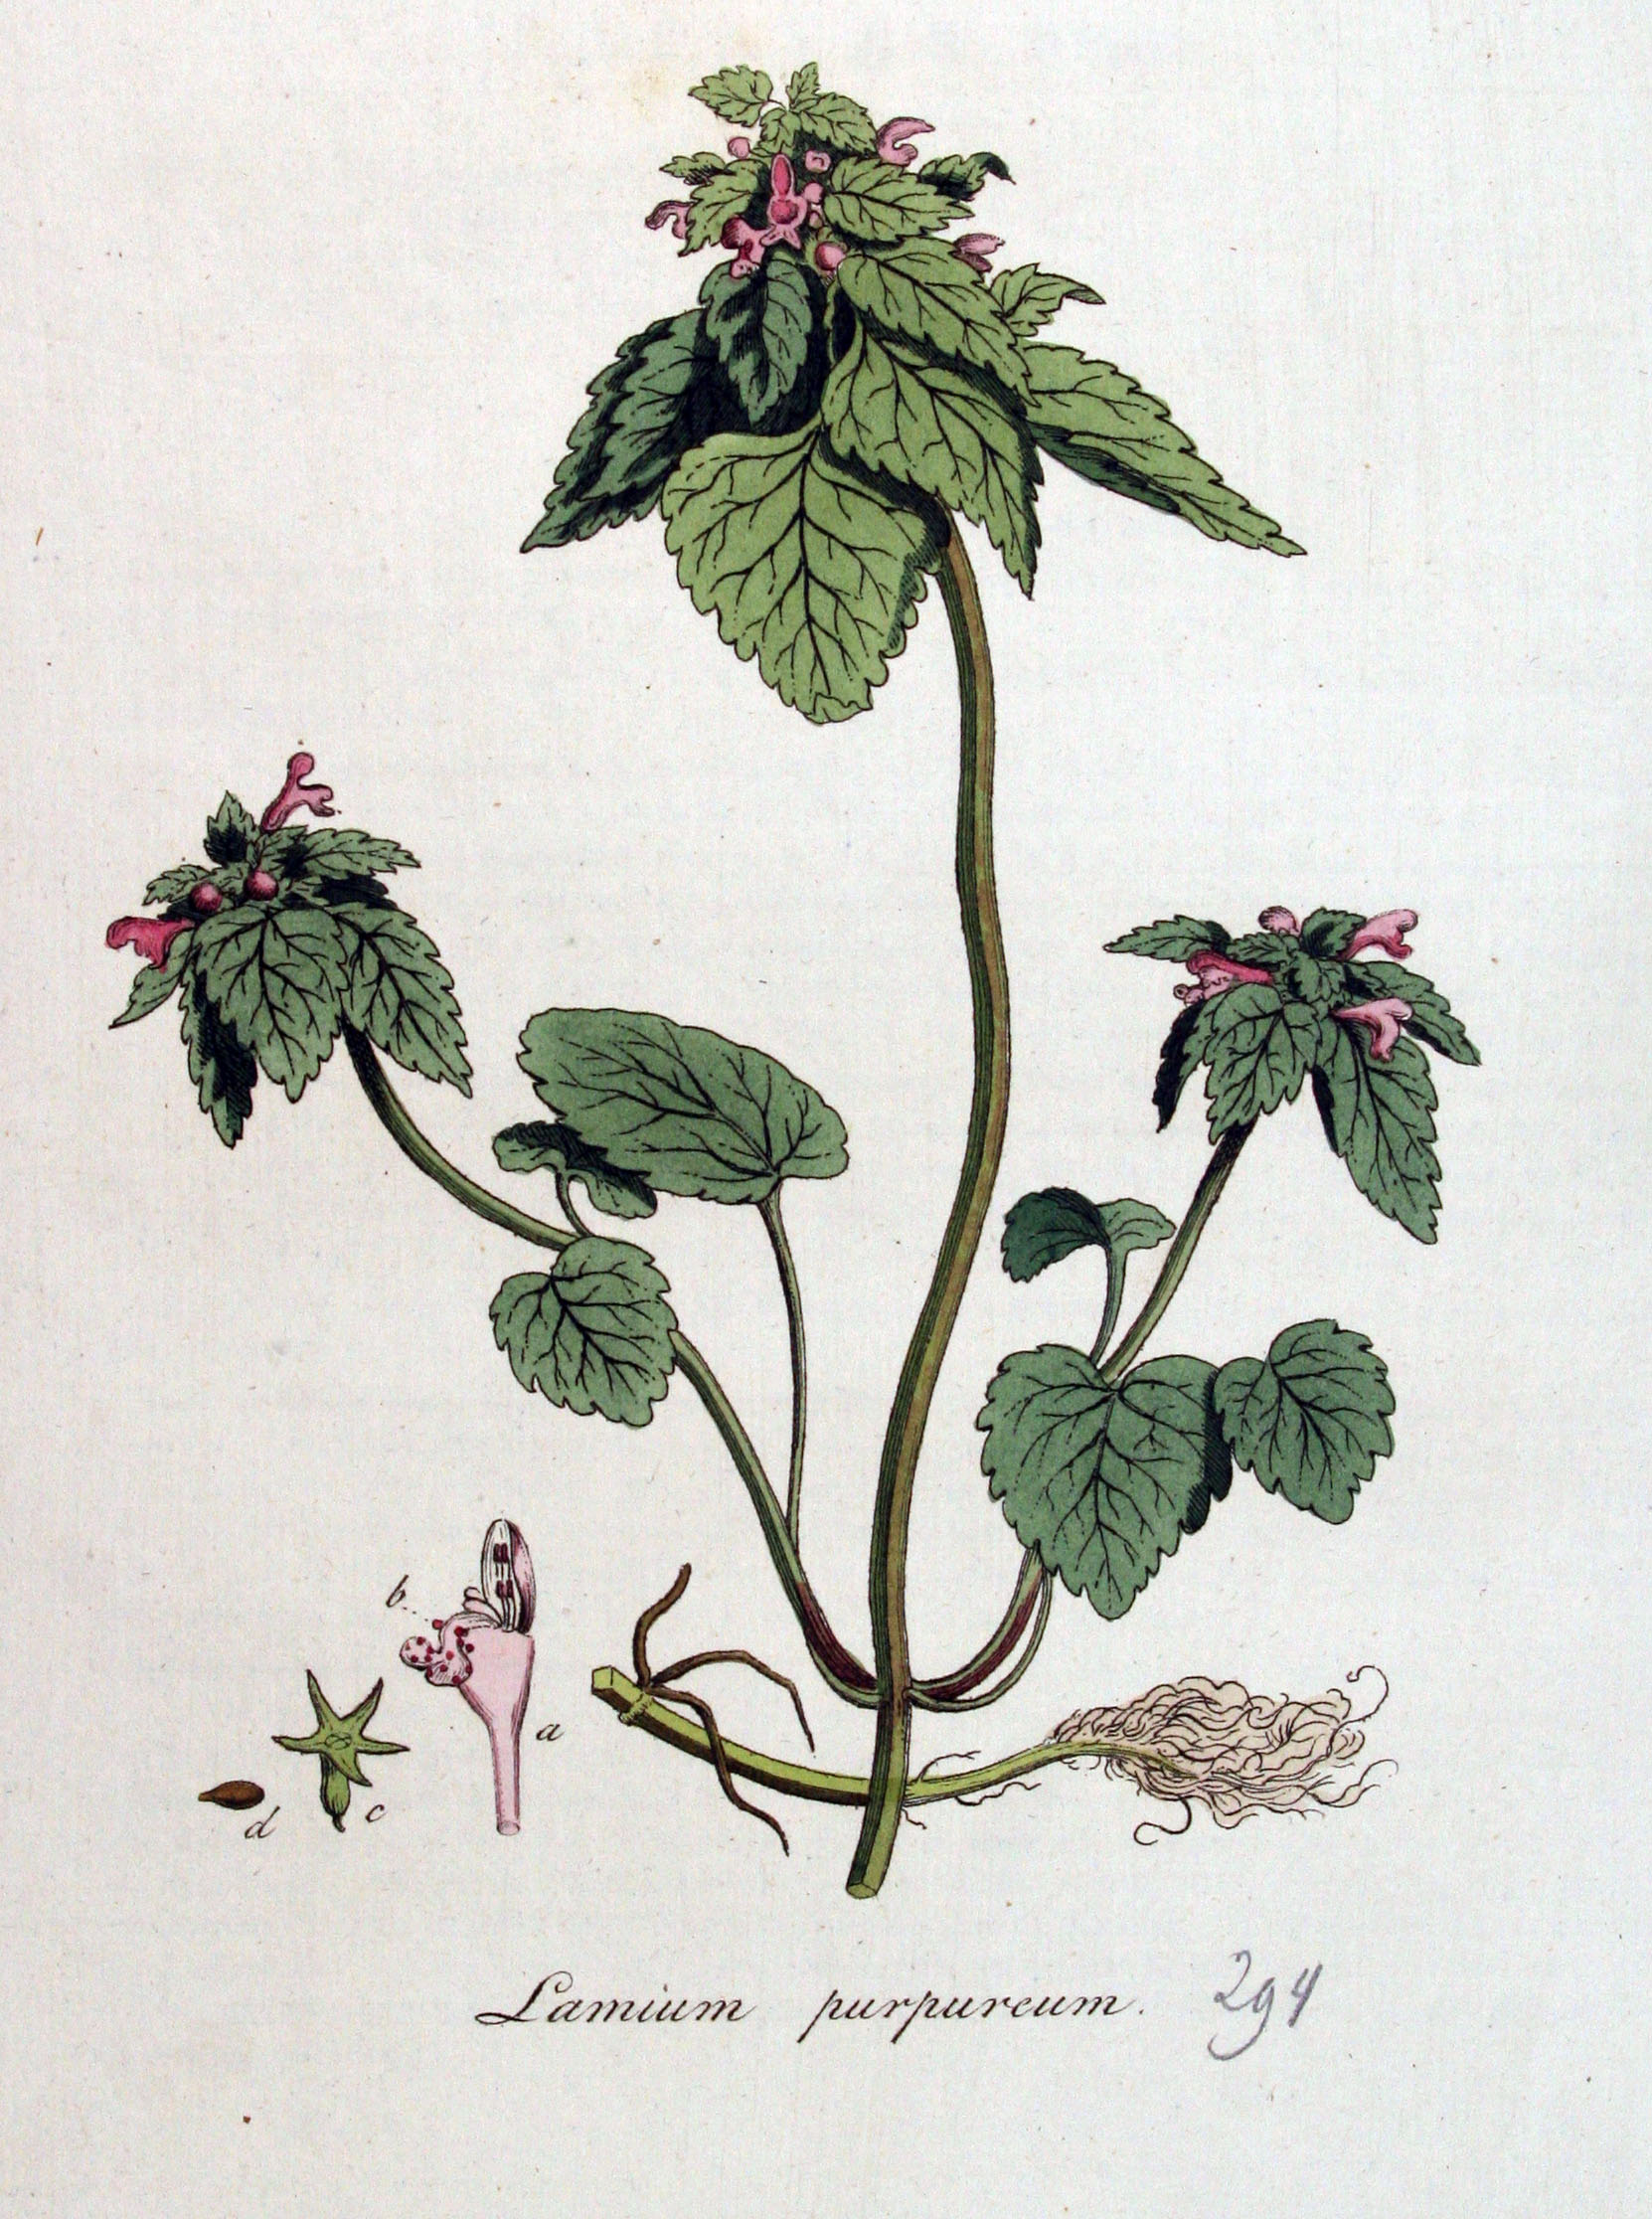 1822 botanical illustration of Lamium purpureum by Christiaan Sepp.